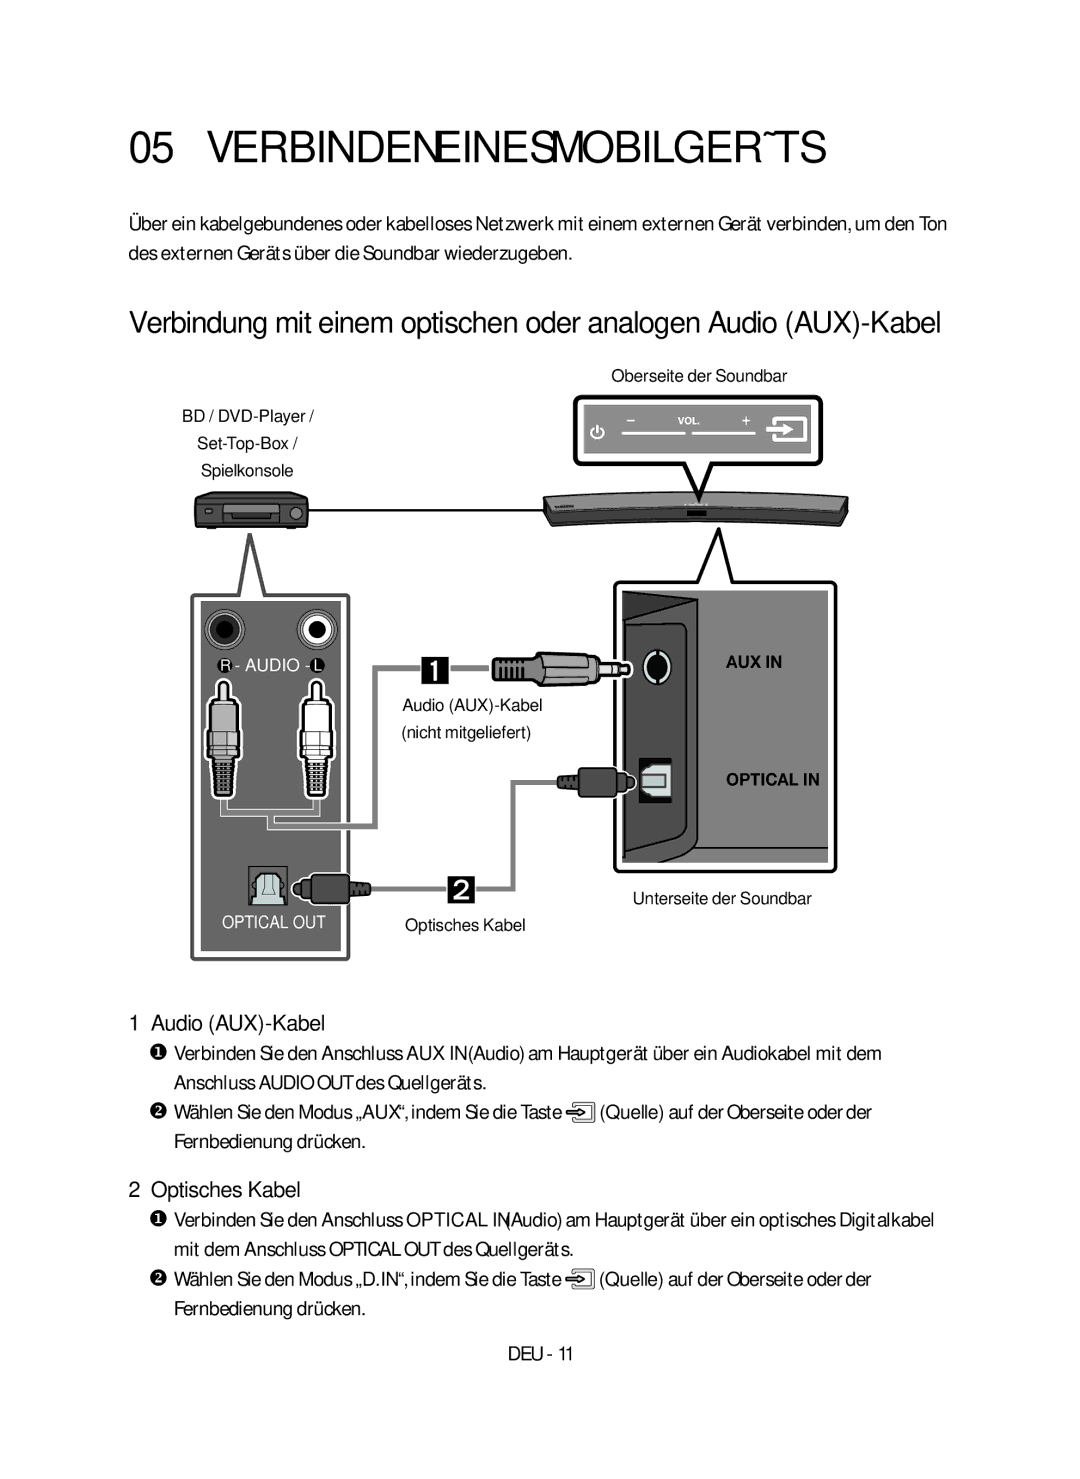 Samsung HW-M4500/EN manual Verbinden eines Mobilgeräts, Optisches Kabel, Audio AUX-Kabel Nicht mitgeliefert 